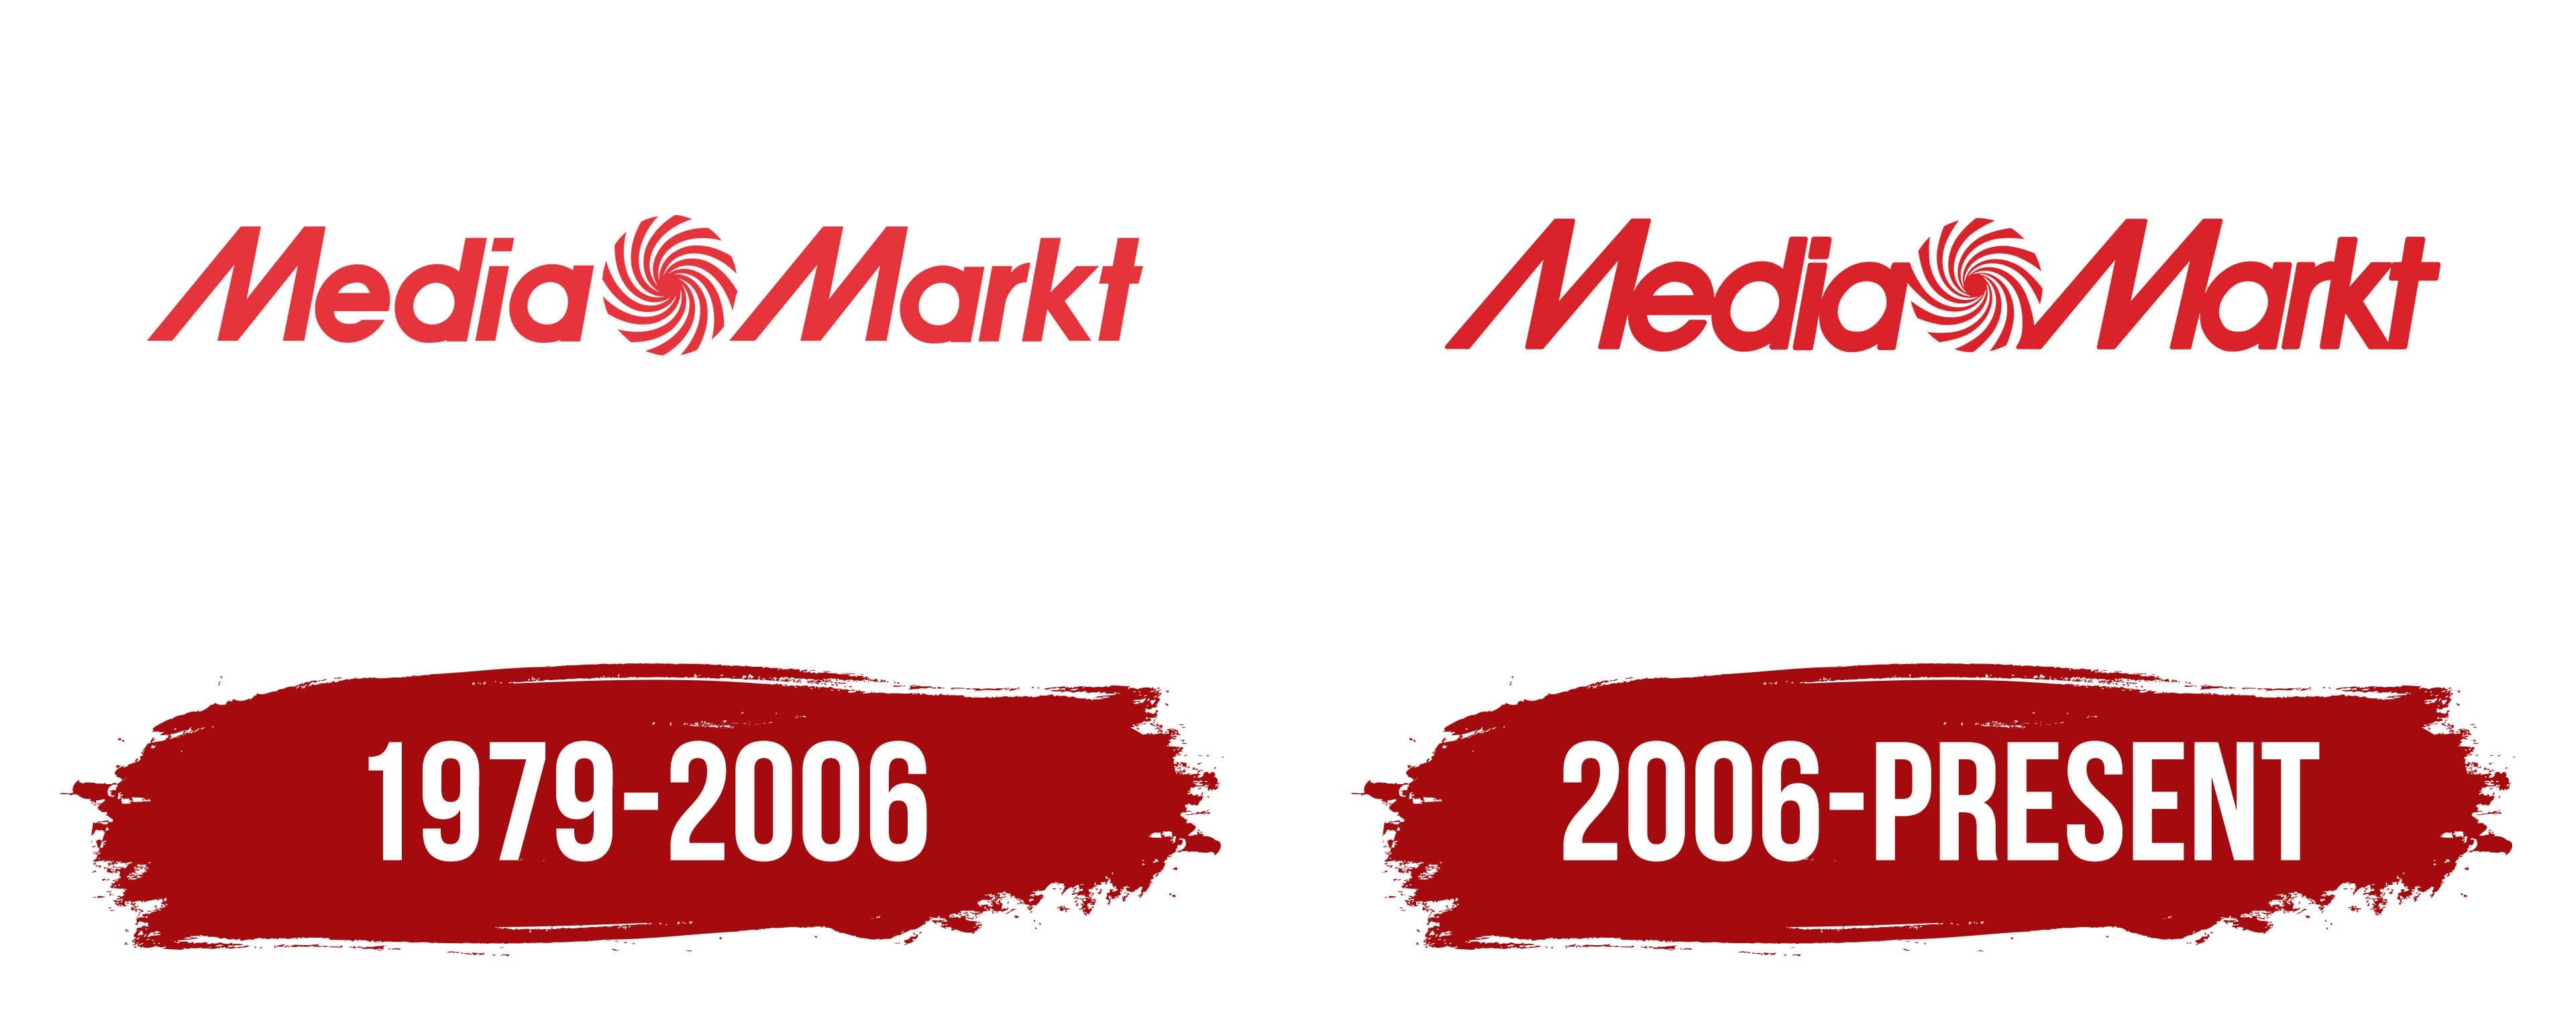 wijk Alert Leger Media Markt Logo, symbol, meaning, history, PNG, brand